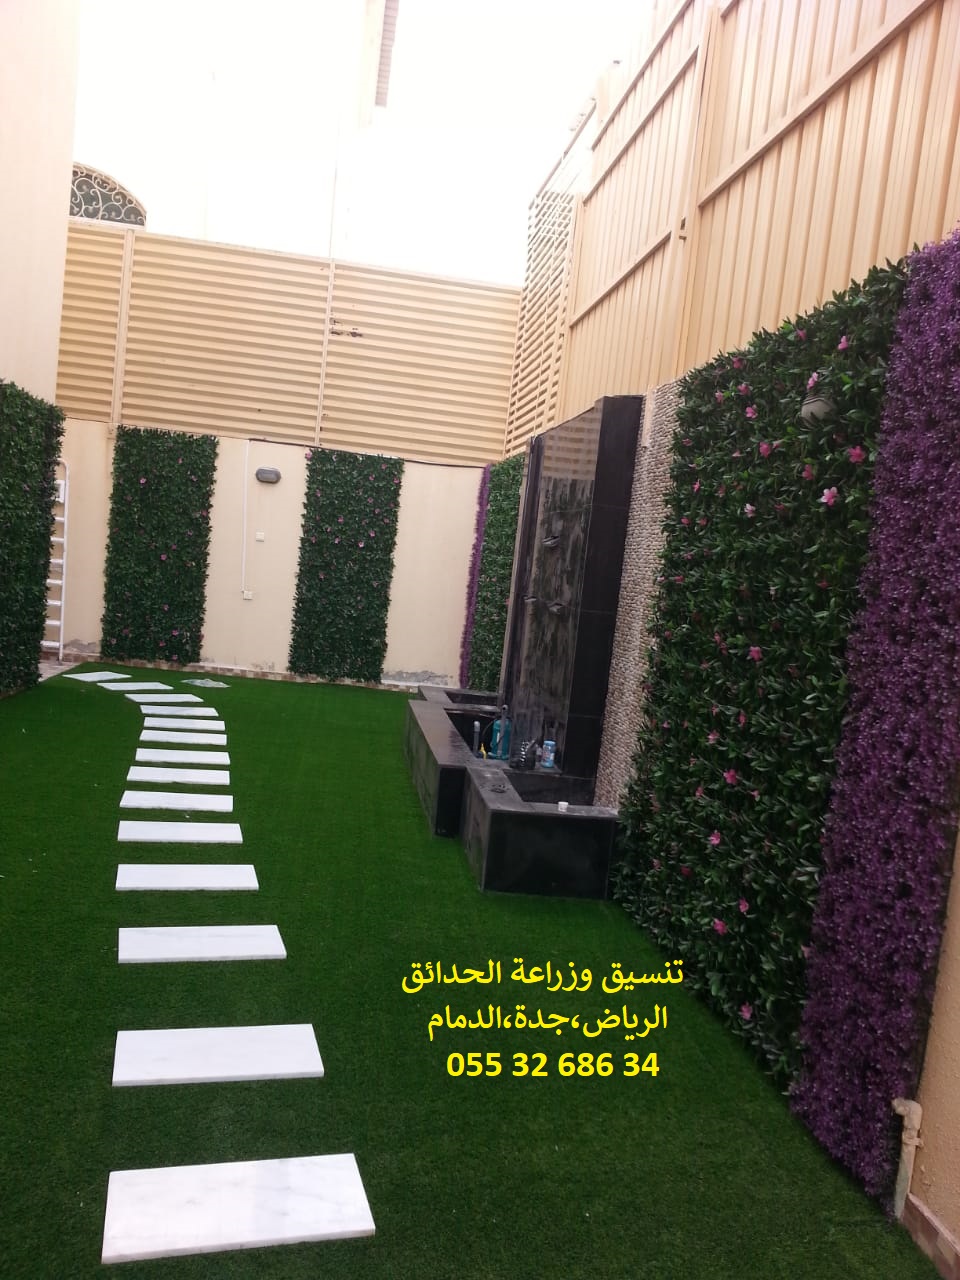 ارخص شركة تنسيق حدائق عشب صناعي عشب جداري الرياض جدة الدمام 0553268634 P_1143e5okc10